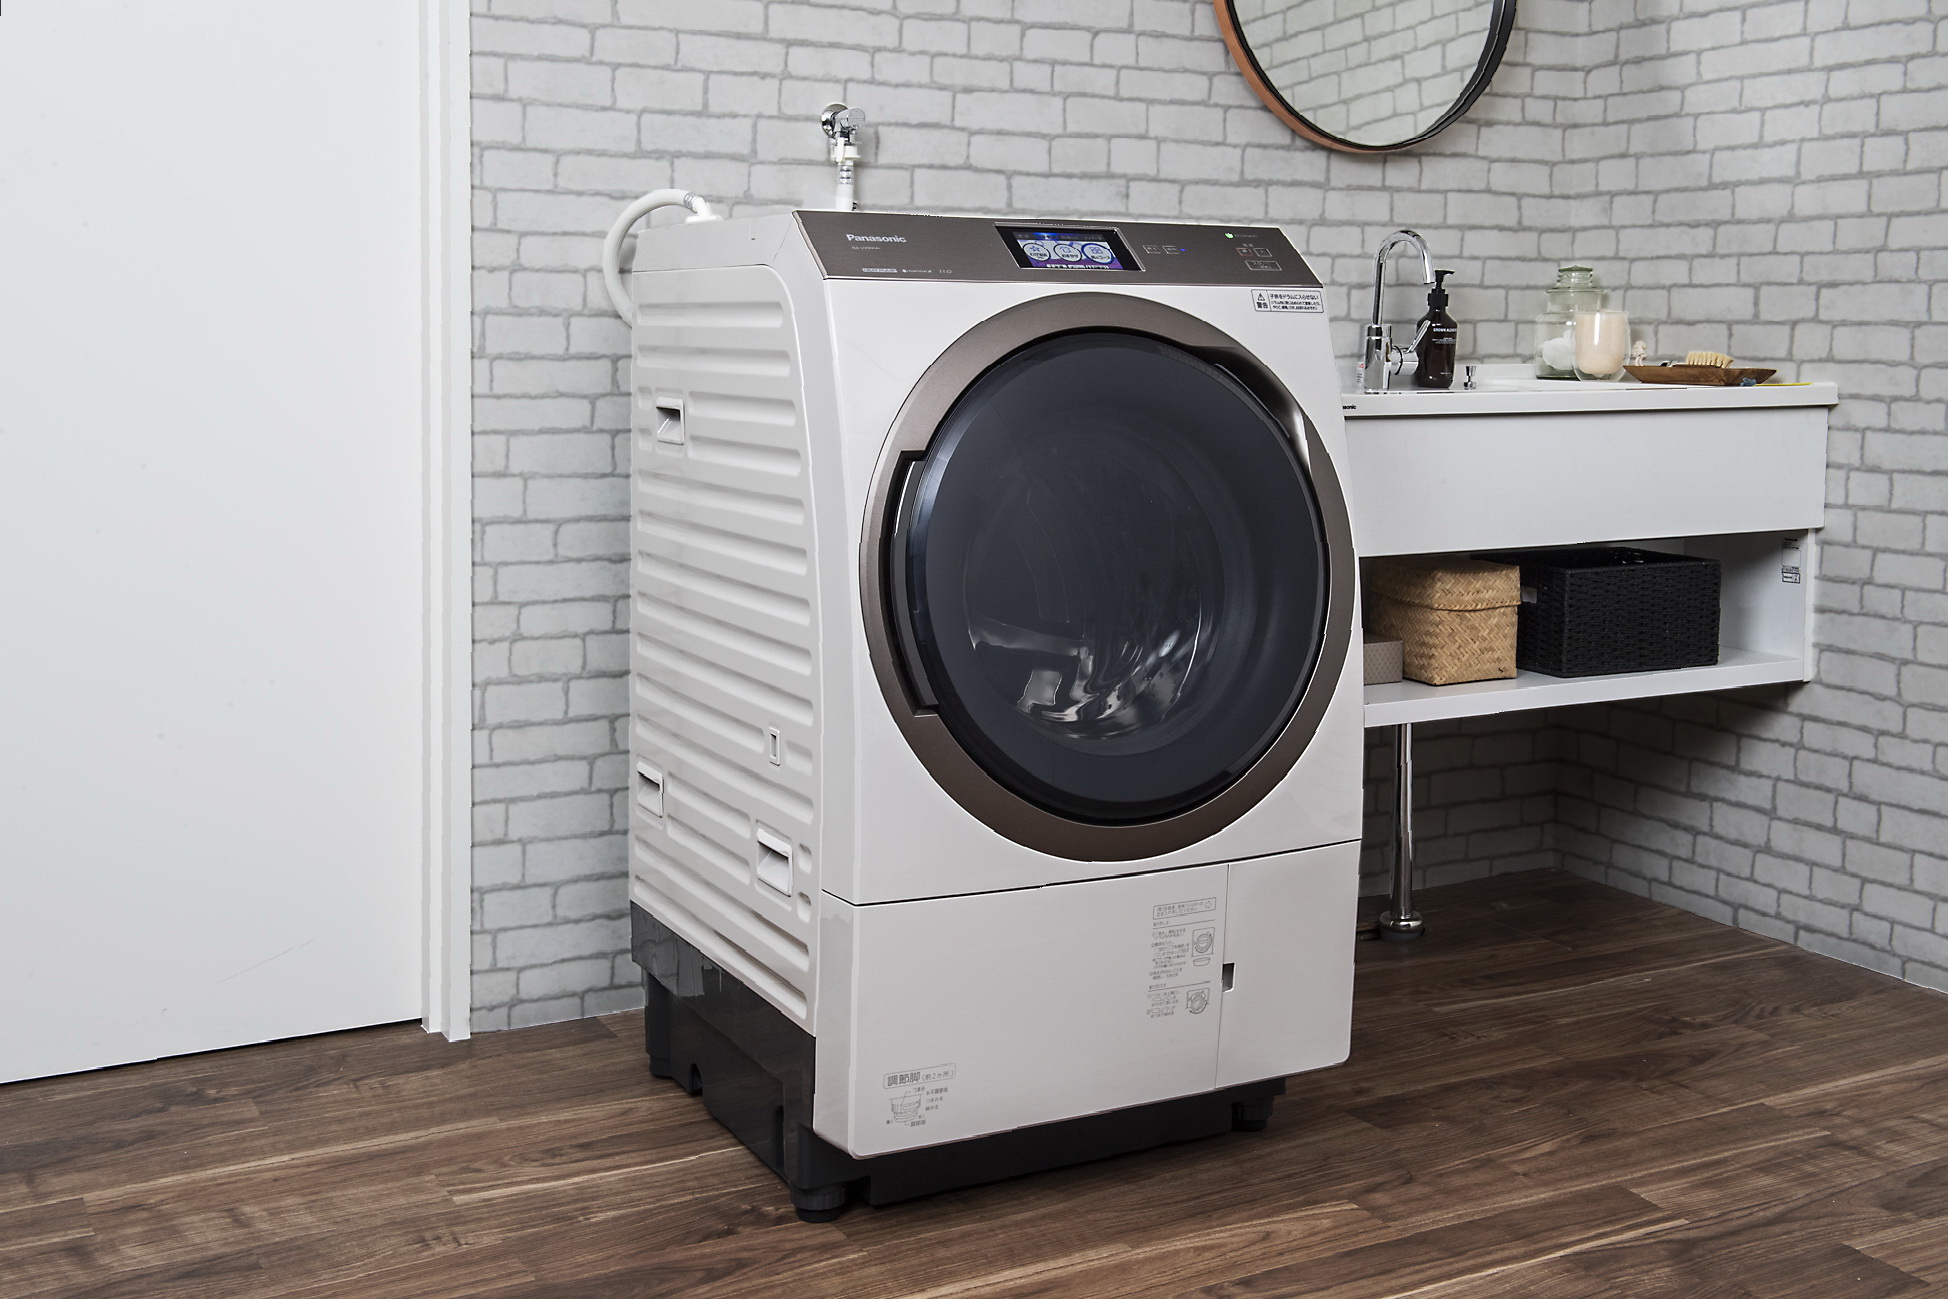 世界的に有名な Panasonic ドラム式洗濯乾燥機 - 洗濯機 - reachahand.org